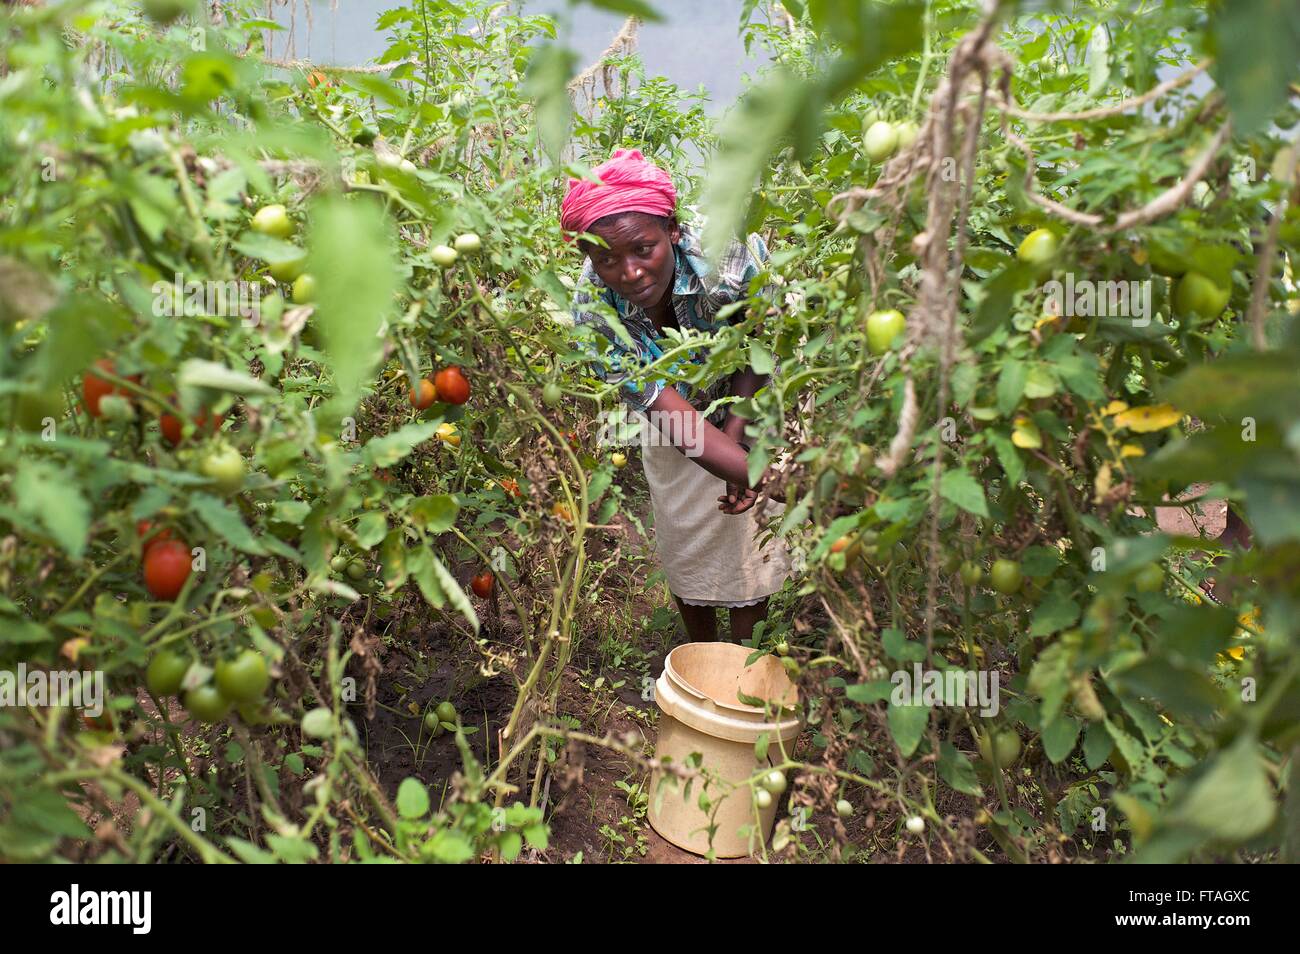 Mitglied Frau Rarieda muslimischen Development Network neigt Gemüse in einem Gewächshaus Teil eines Programms HIV-positive Frauen 9. April 2014 in Mahaya, Kenia unternehmerische Fähigkeiten beizubringen. Stockfoto